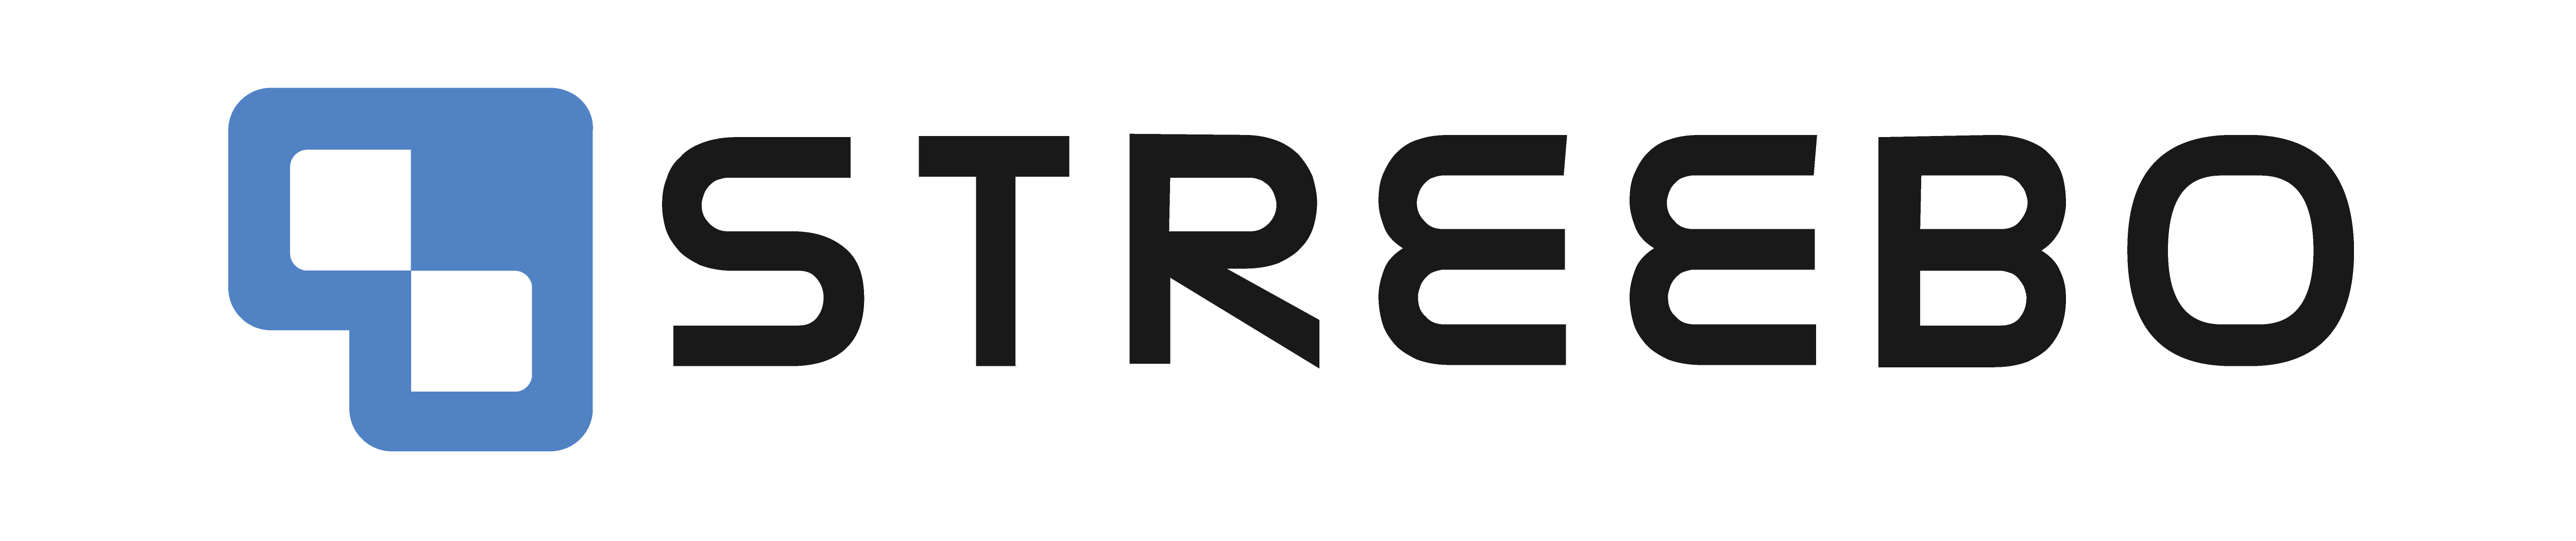 Streebo Logo colour